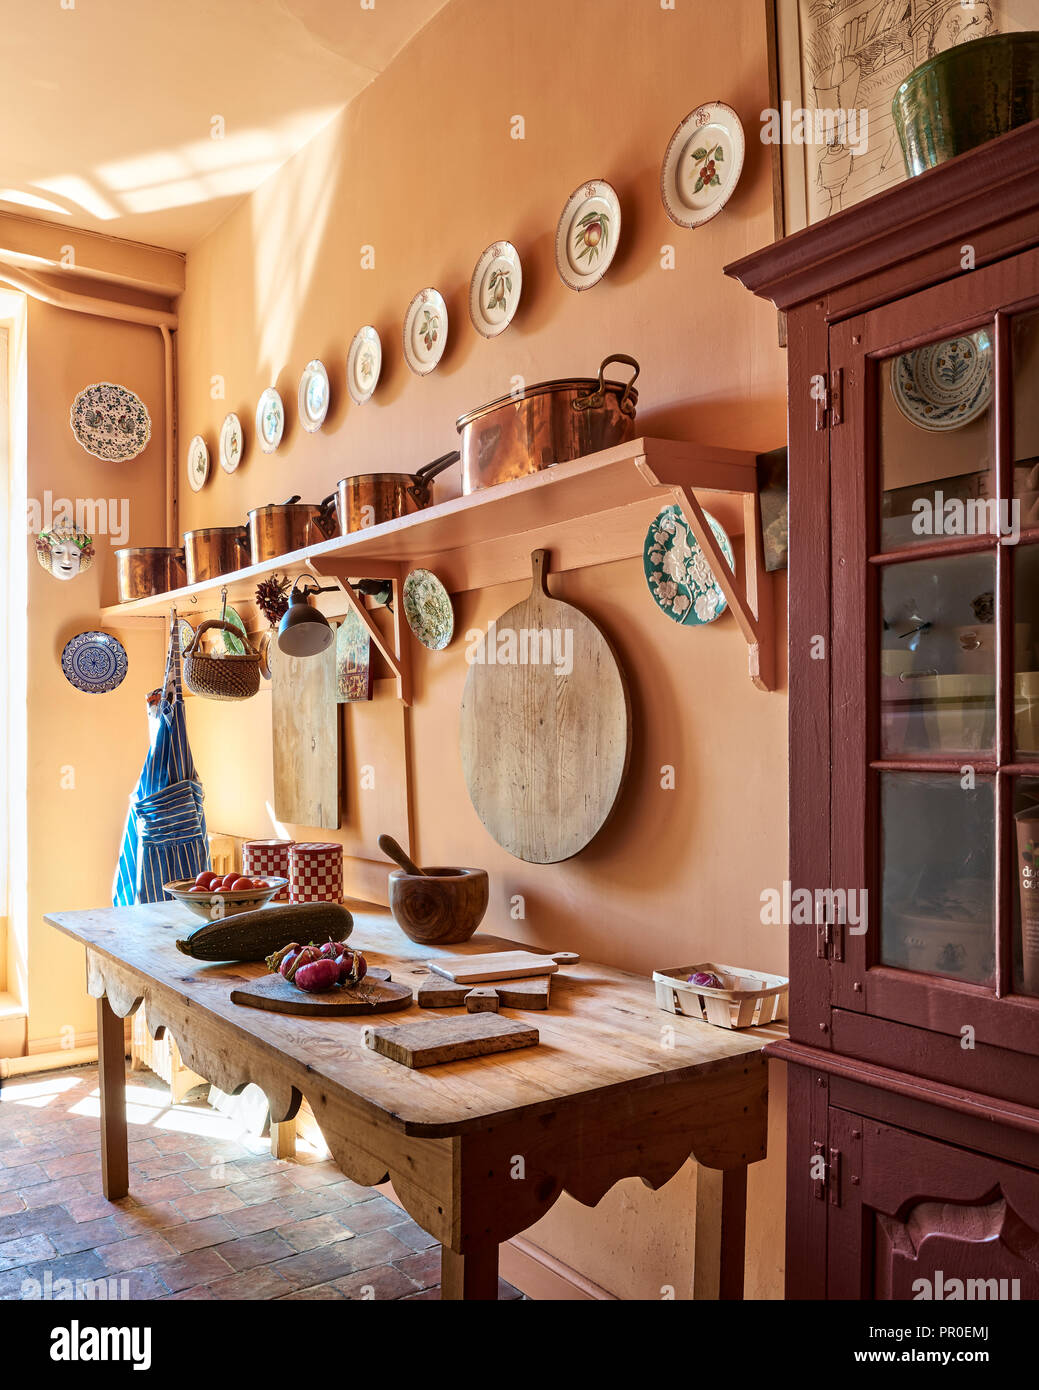 Casale rustico cucina con grande tagliere e pentole in rame Foto Stock